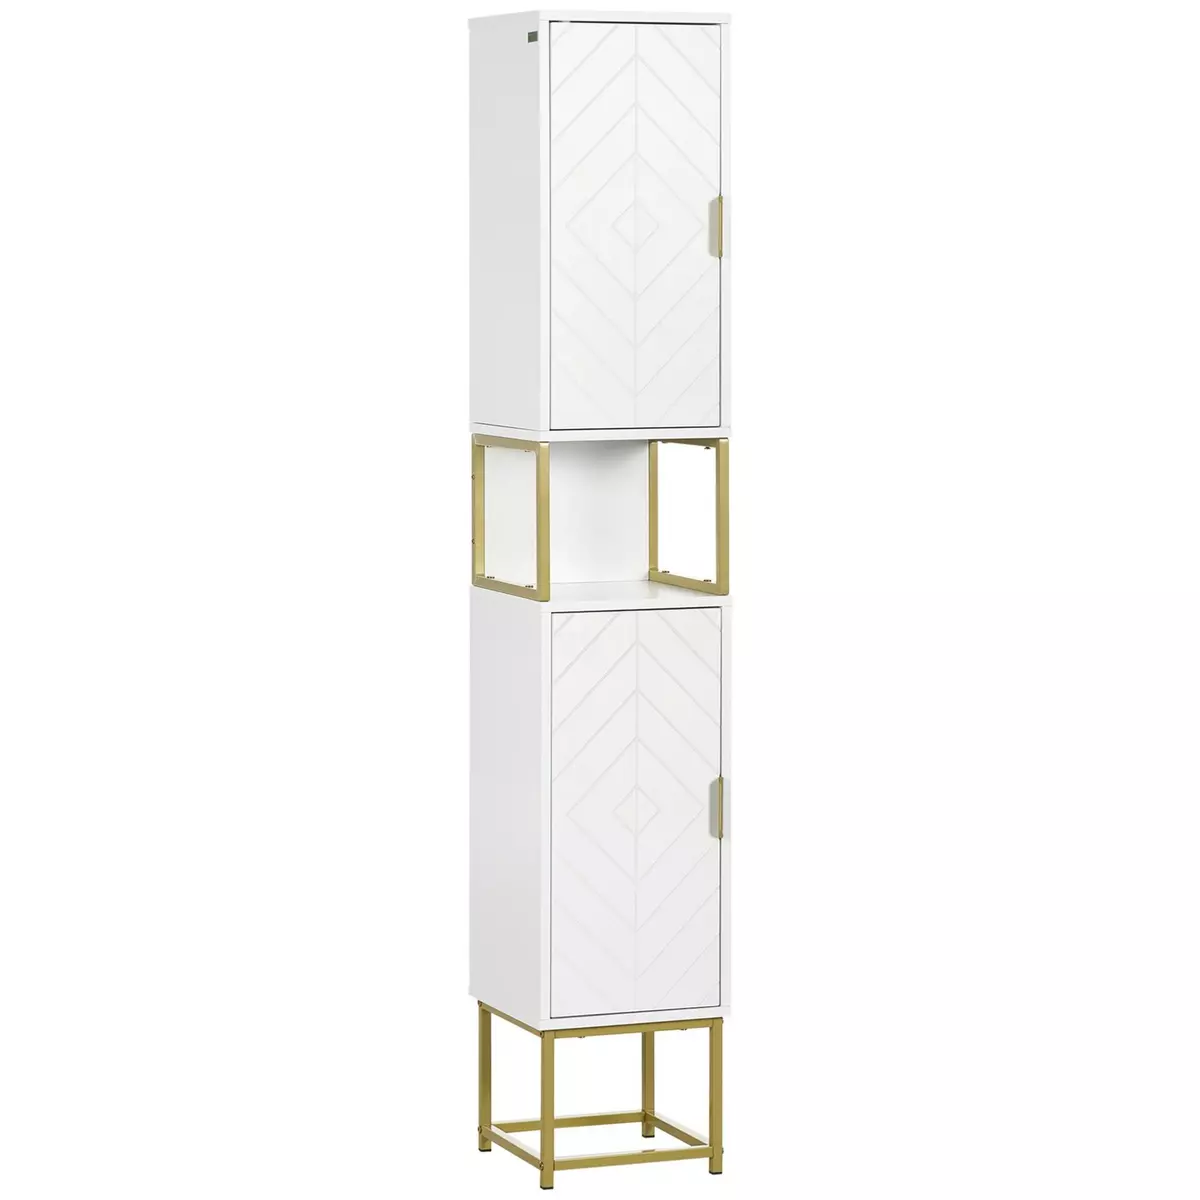 KLEANKIN Meuble colonne rangement salle de bain design - 2 portes, 2 étagères, niche - acier doré MDF blanc